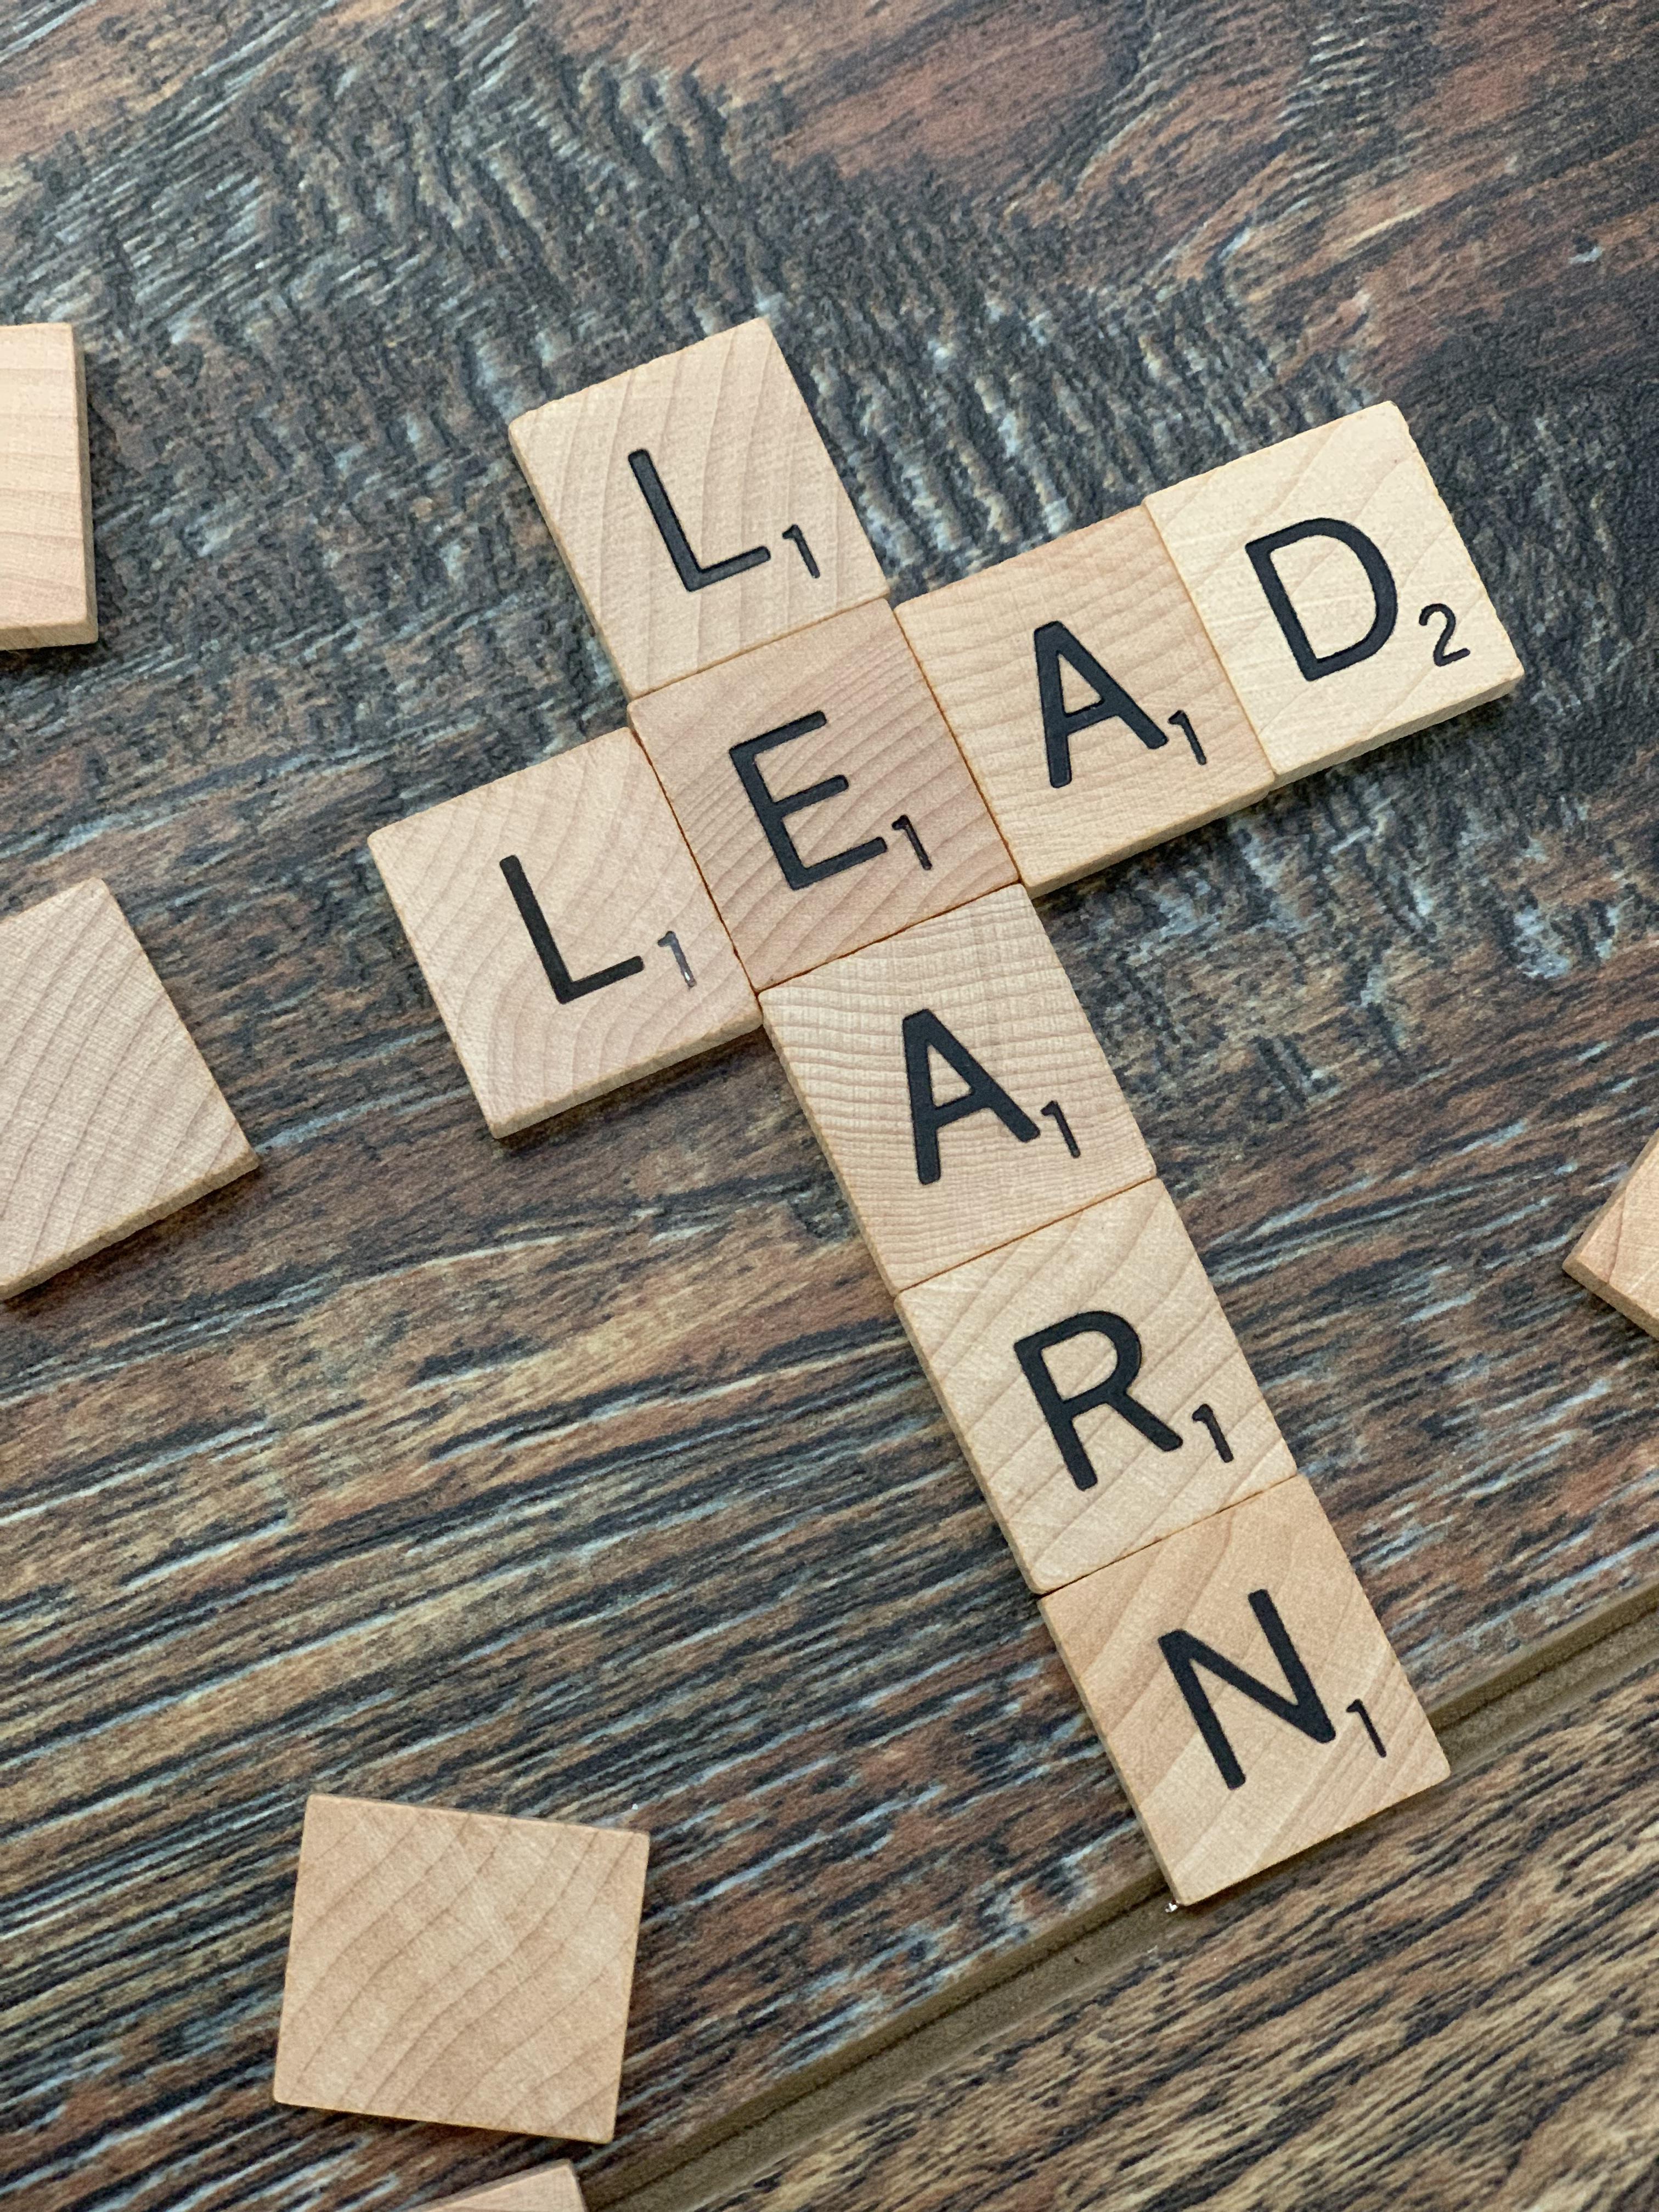 lead_learn